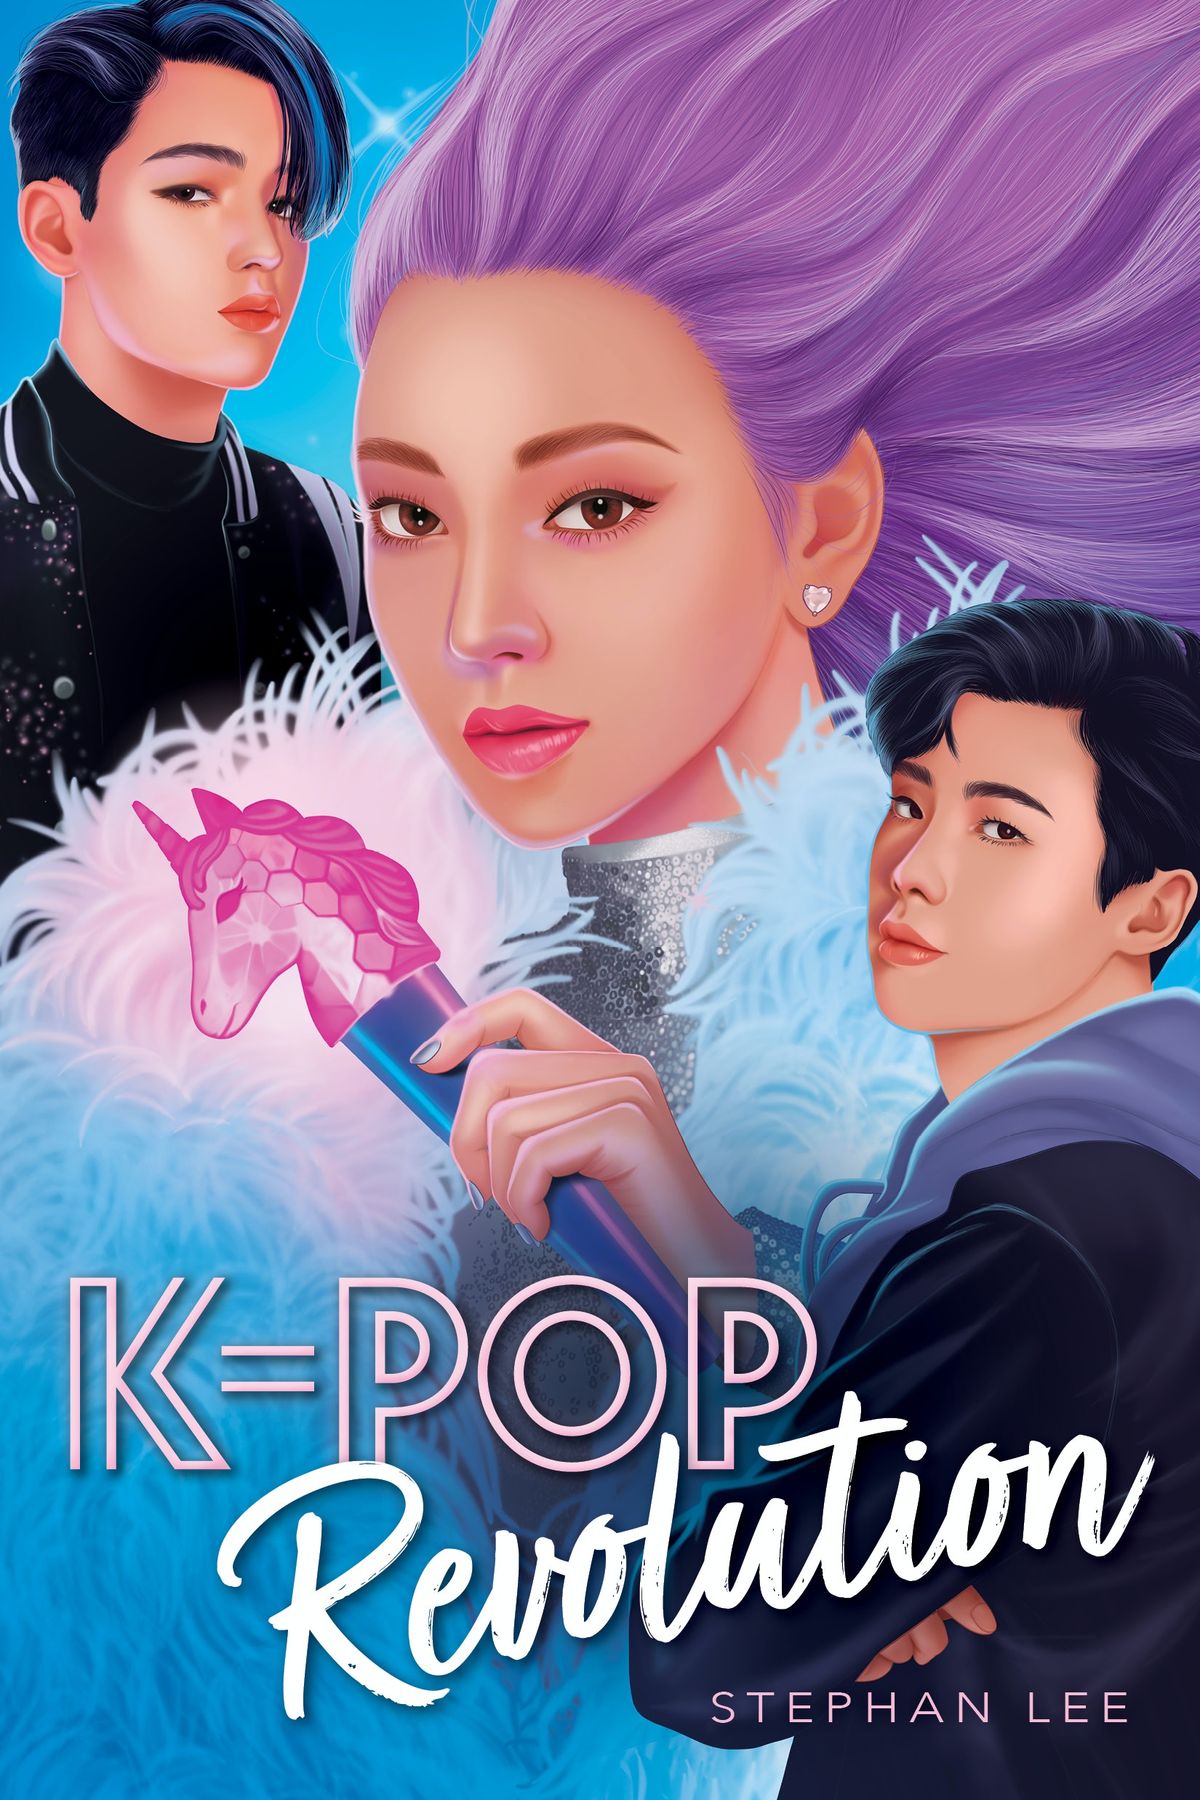 Krijg een eerste blik op Stephan Lee's K-Pop vertrouwelijk vervolg, K-Pop Revolution